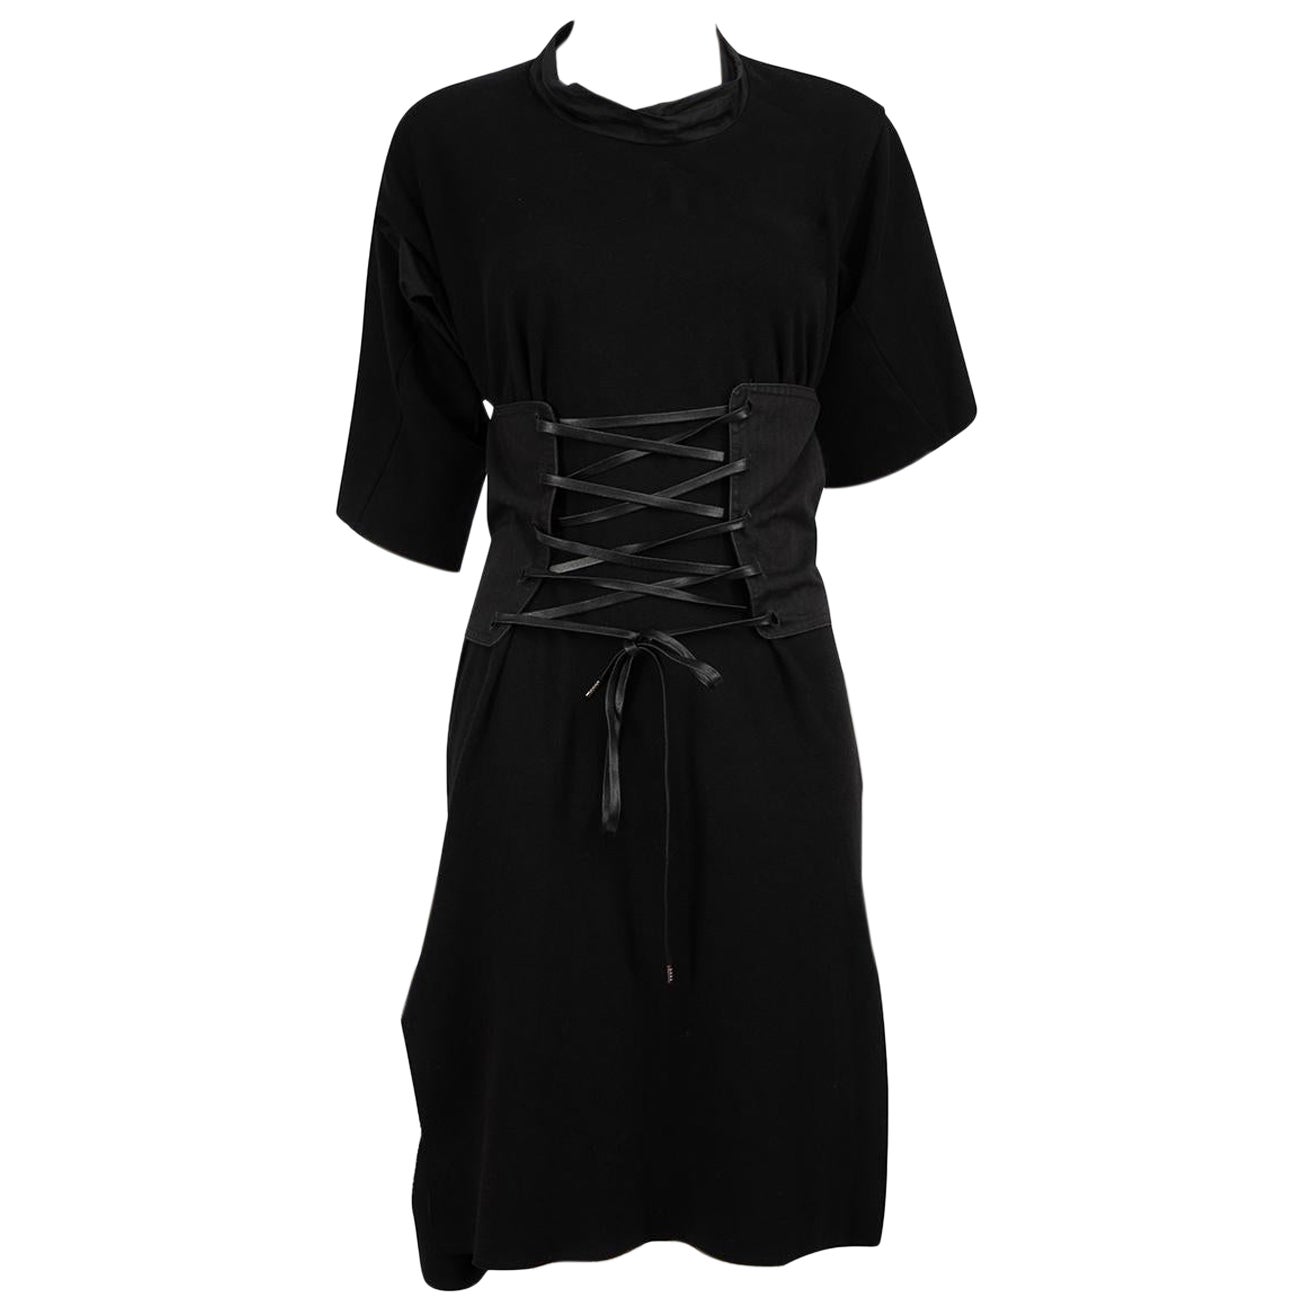 Vivienne Westwood Vivienne West Wood Anglomania Black Corset T-shirt Dress XS  For Sale